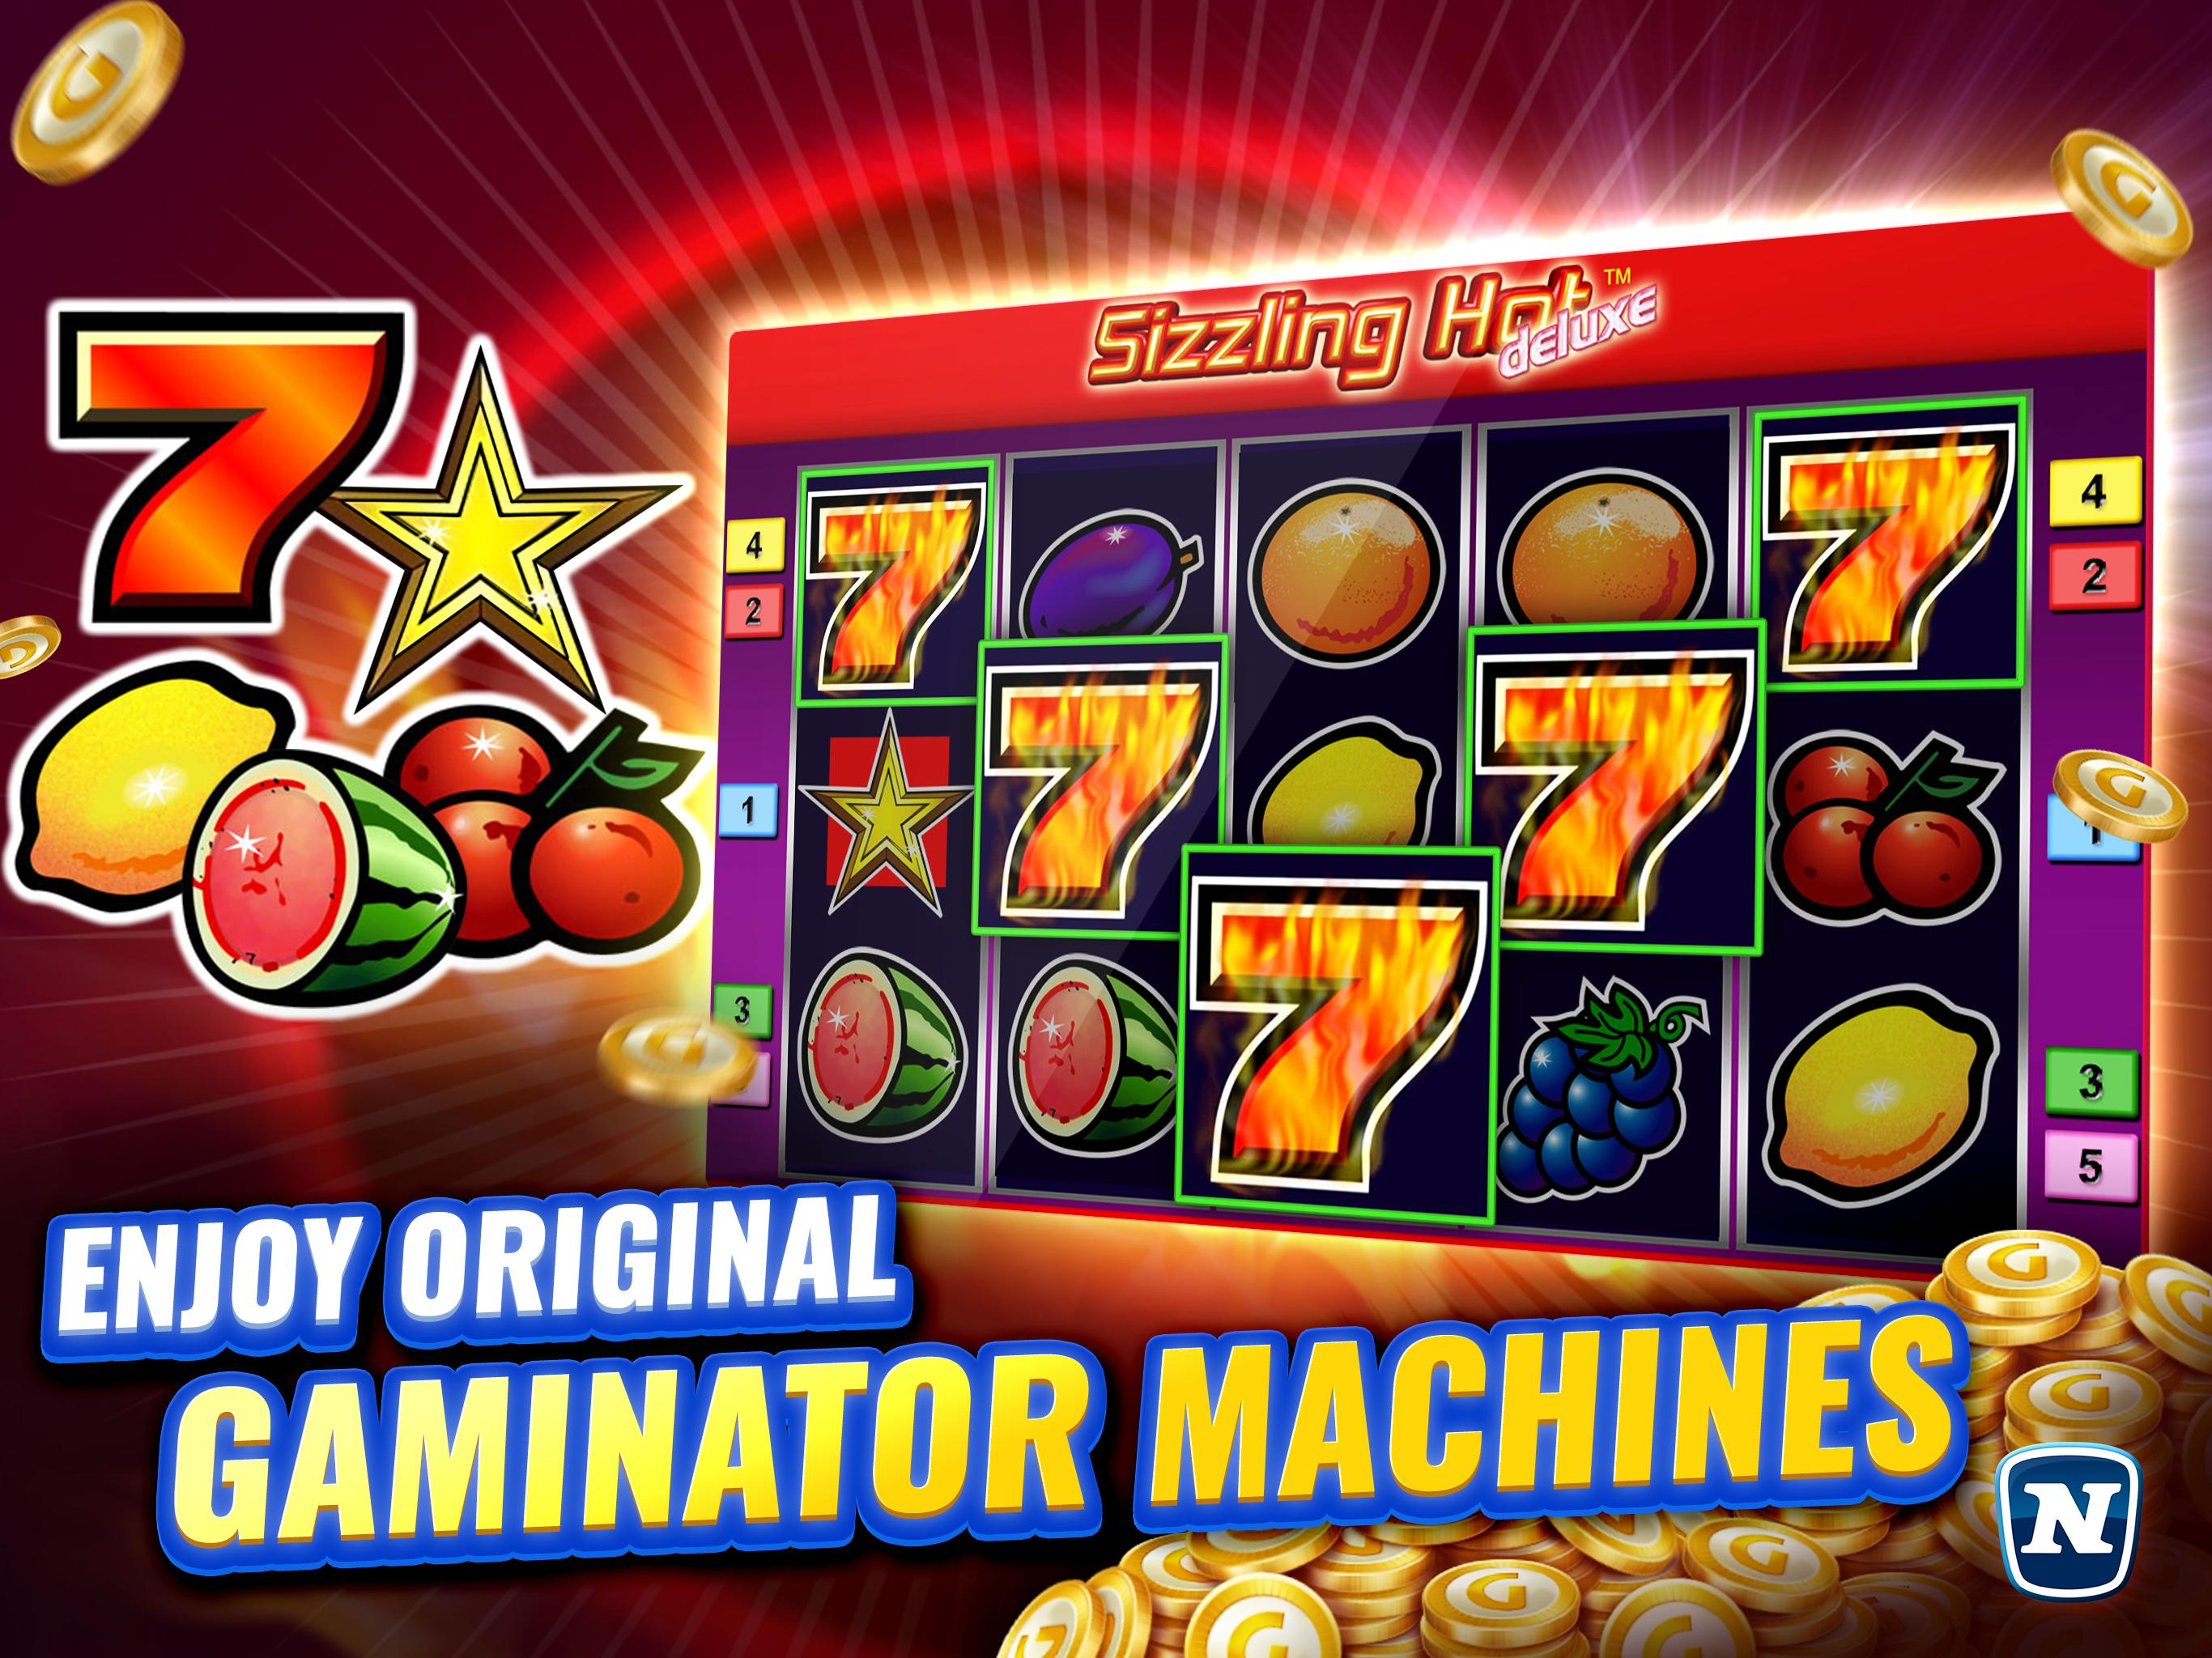 Gaminator Casino Slots - Play Slot Machines 777 3.21.1 Screenshot 7